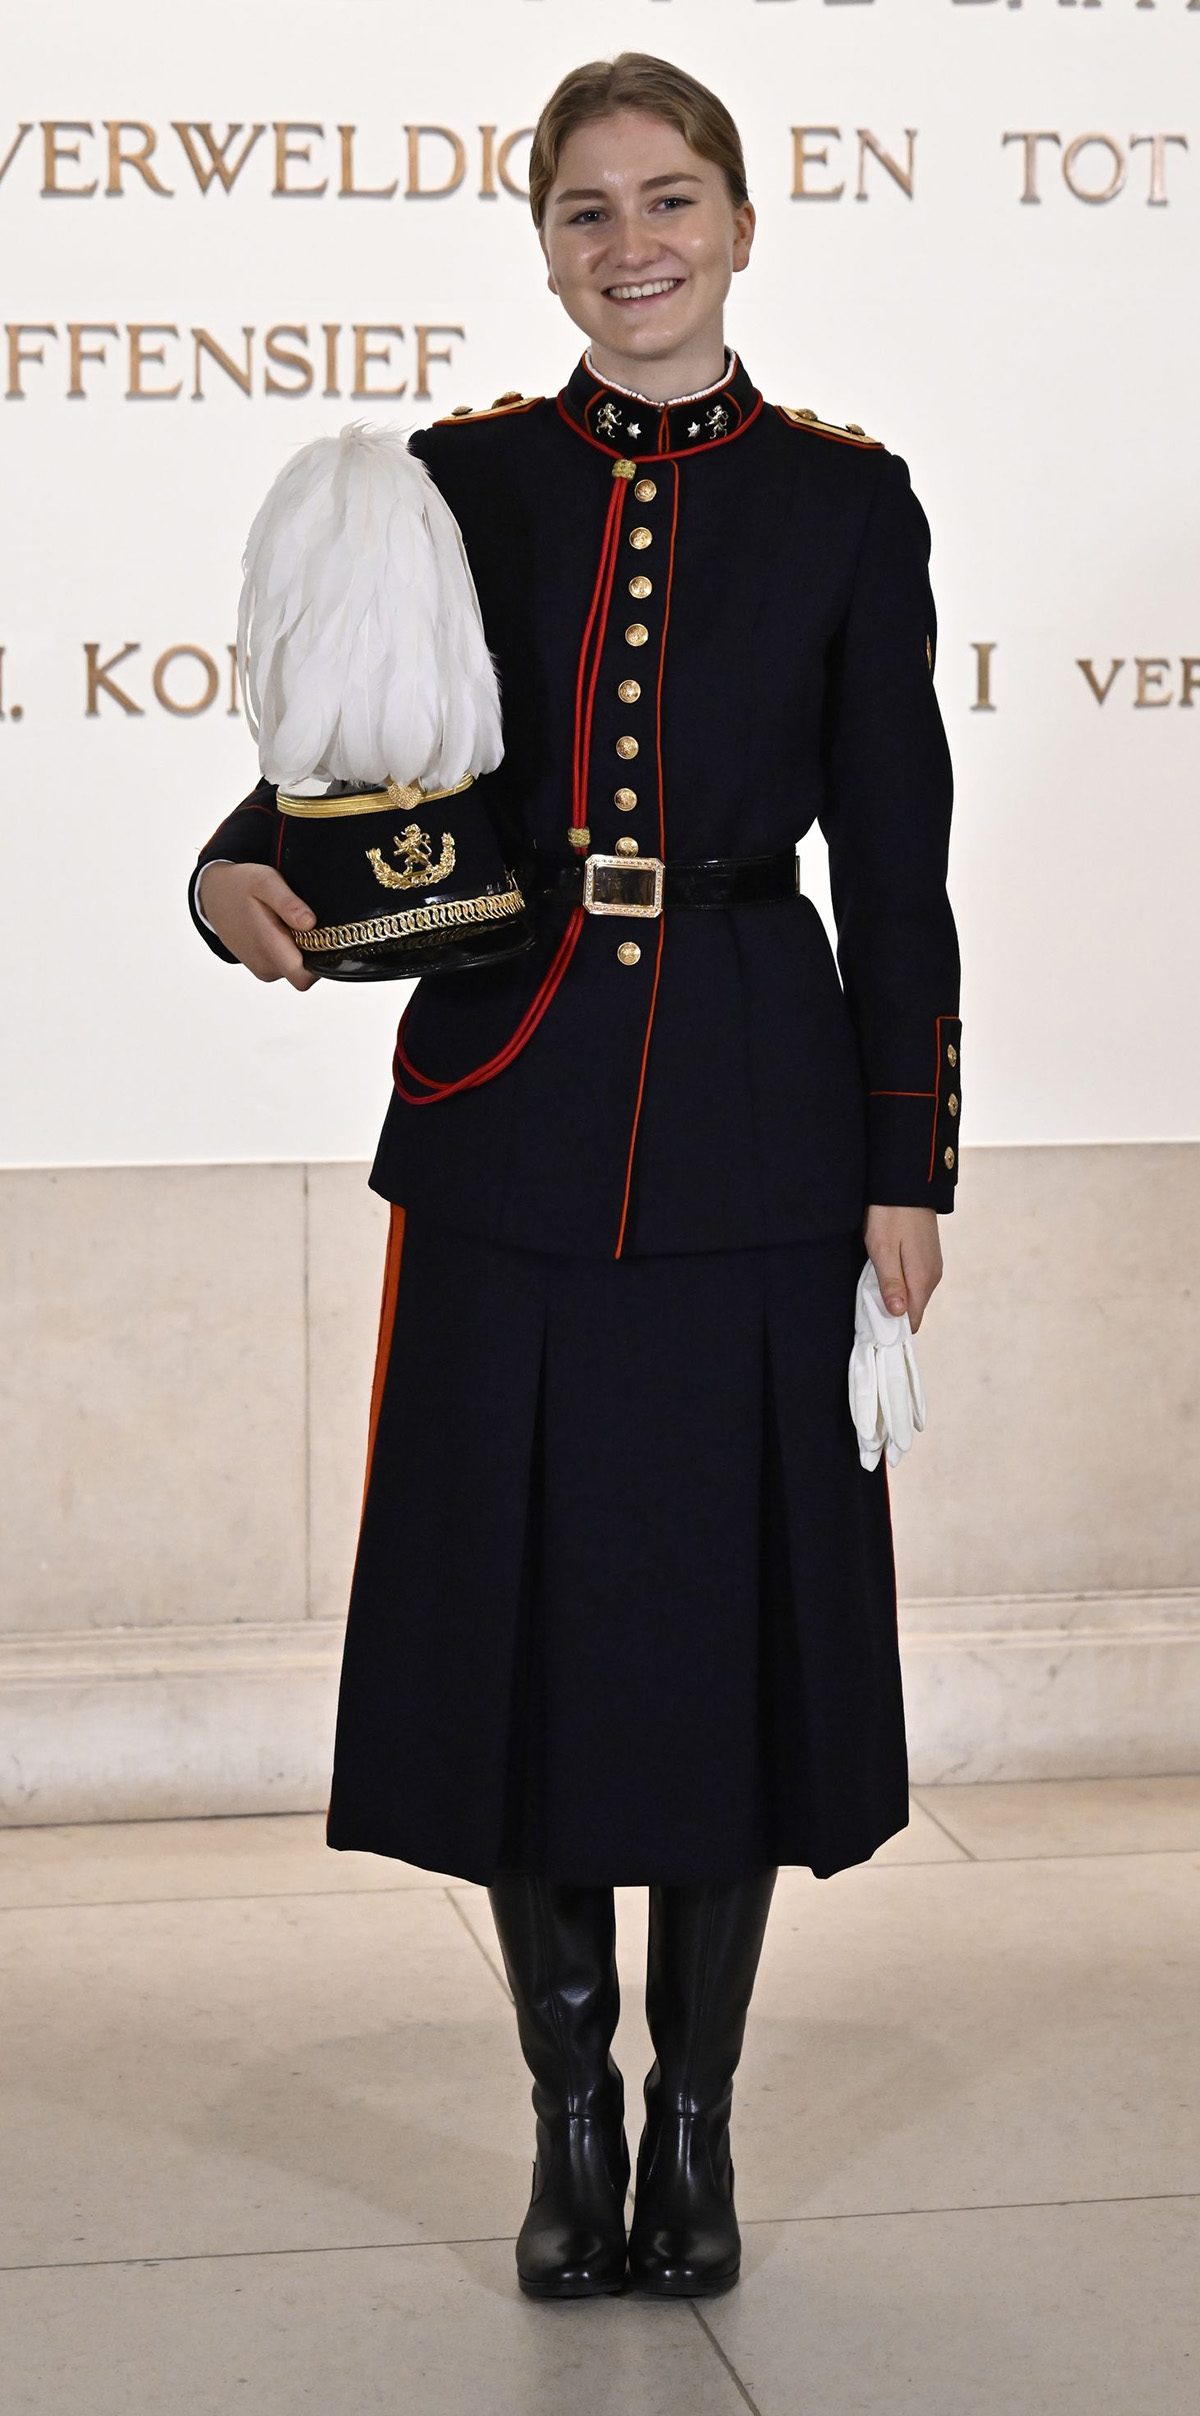 elisabeth de belgica con uniforme de gala